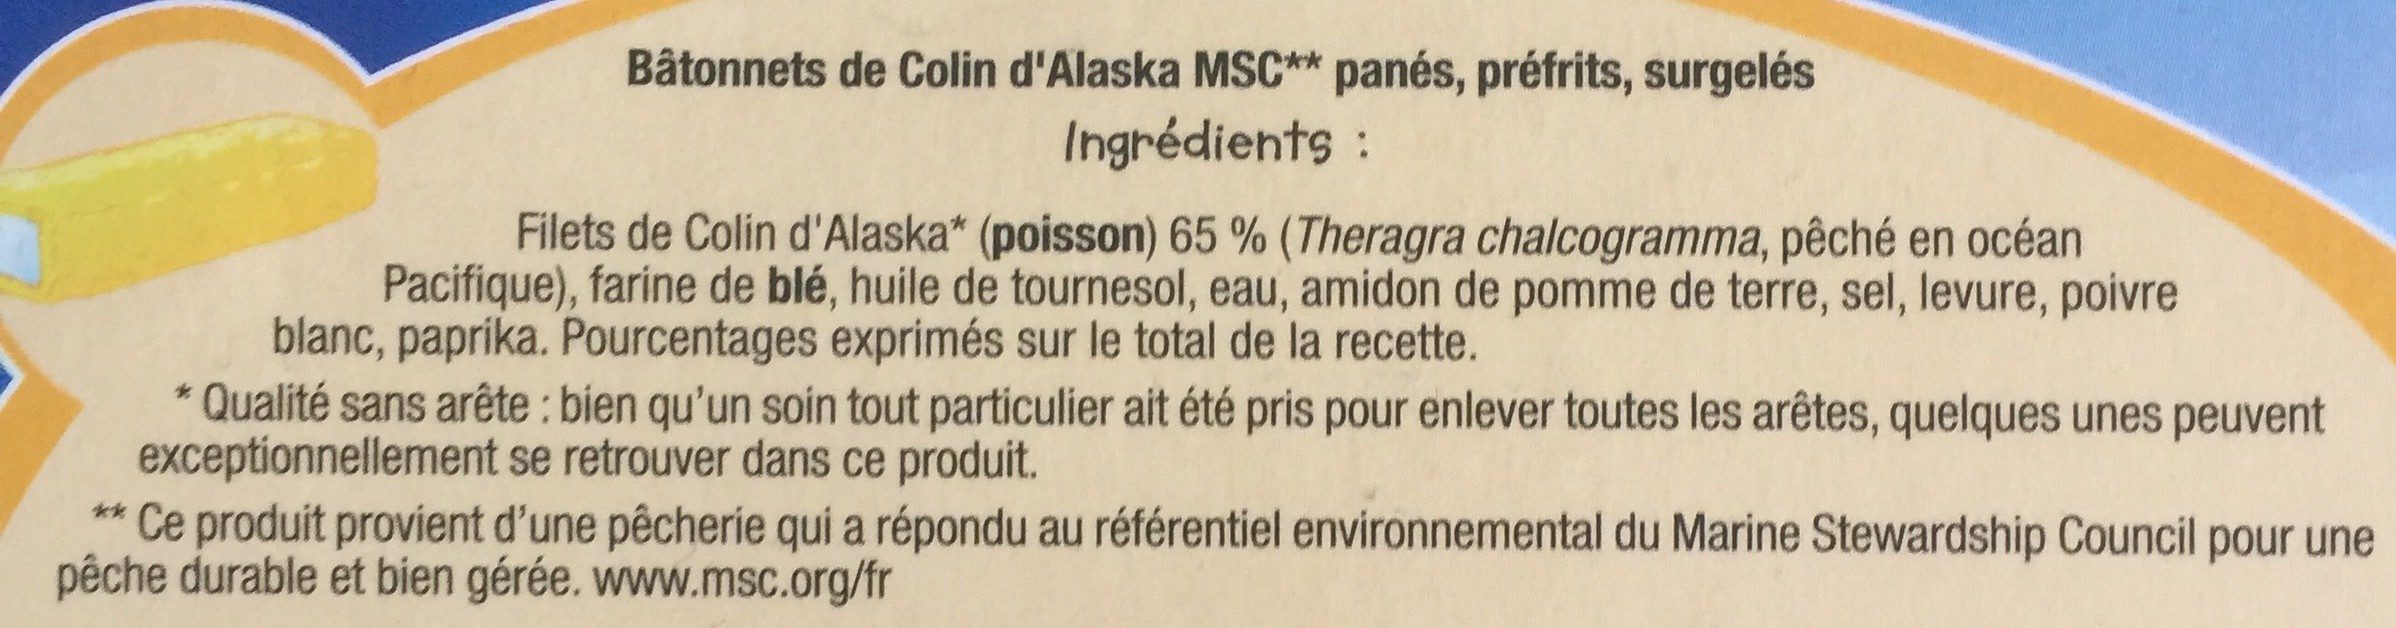 15 Bâtonnets de filets de Colin d'Alaska panésQualité sans arête* - Ingrédients